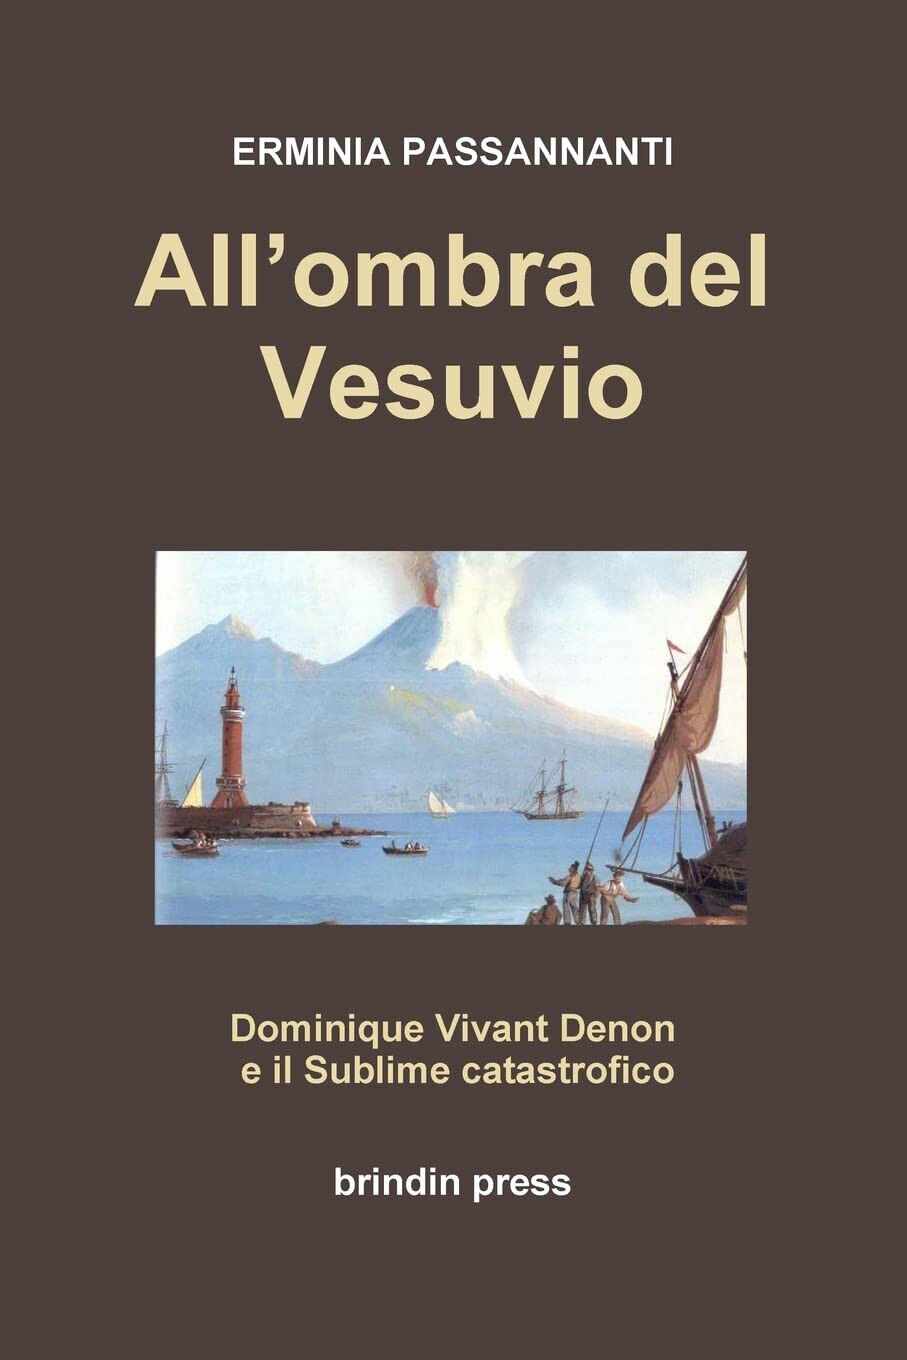 All'ombra del Vesuvio - Erminia Passannanti -  Lulu.com, 2011